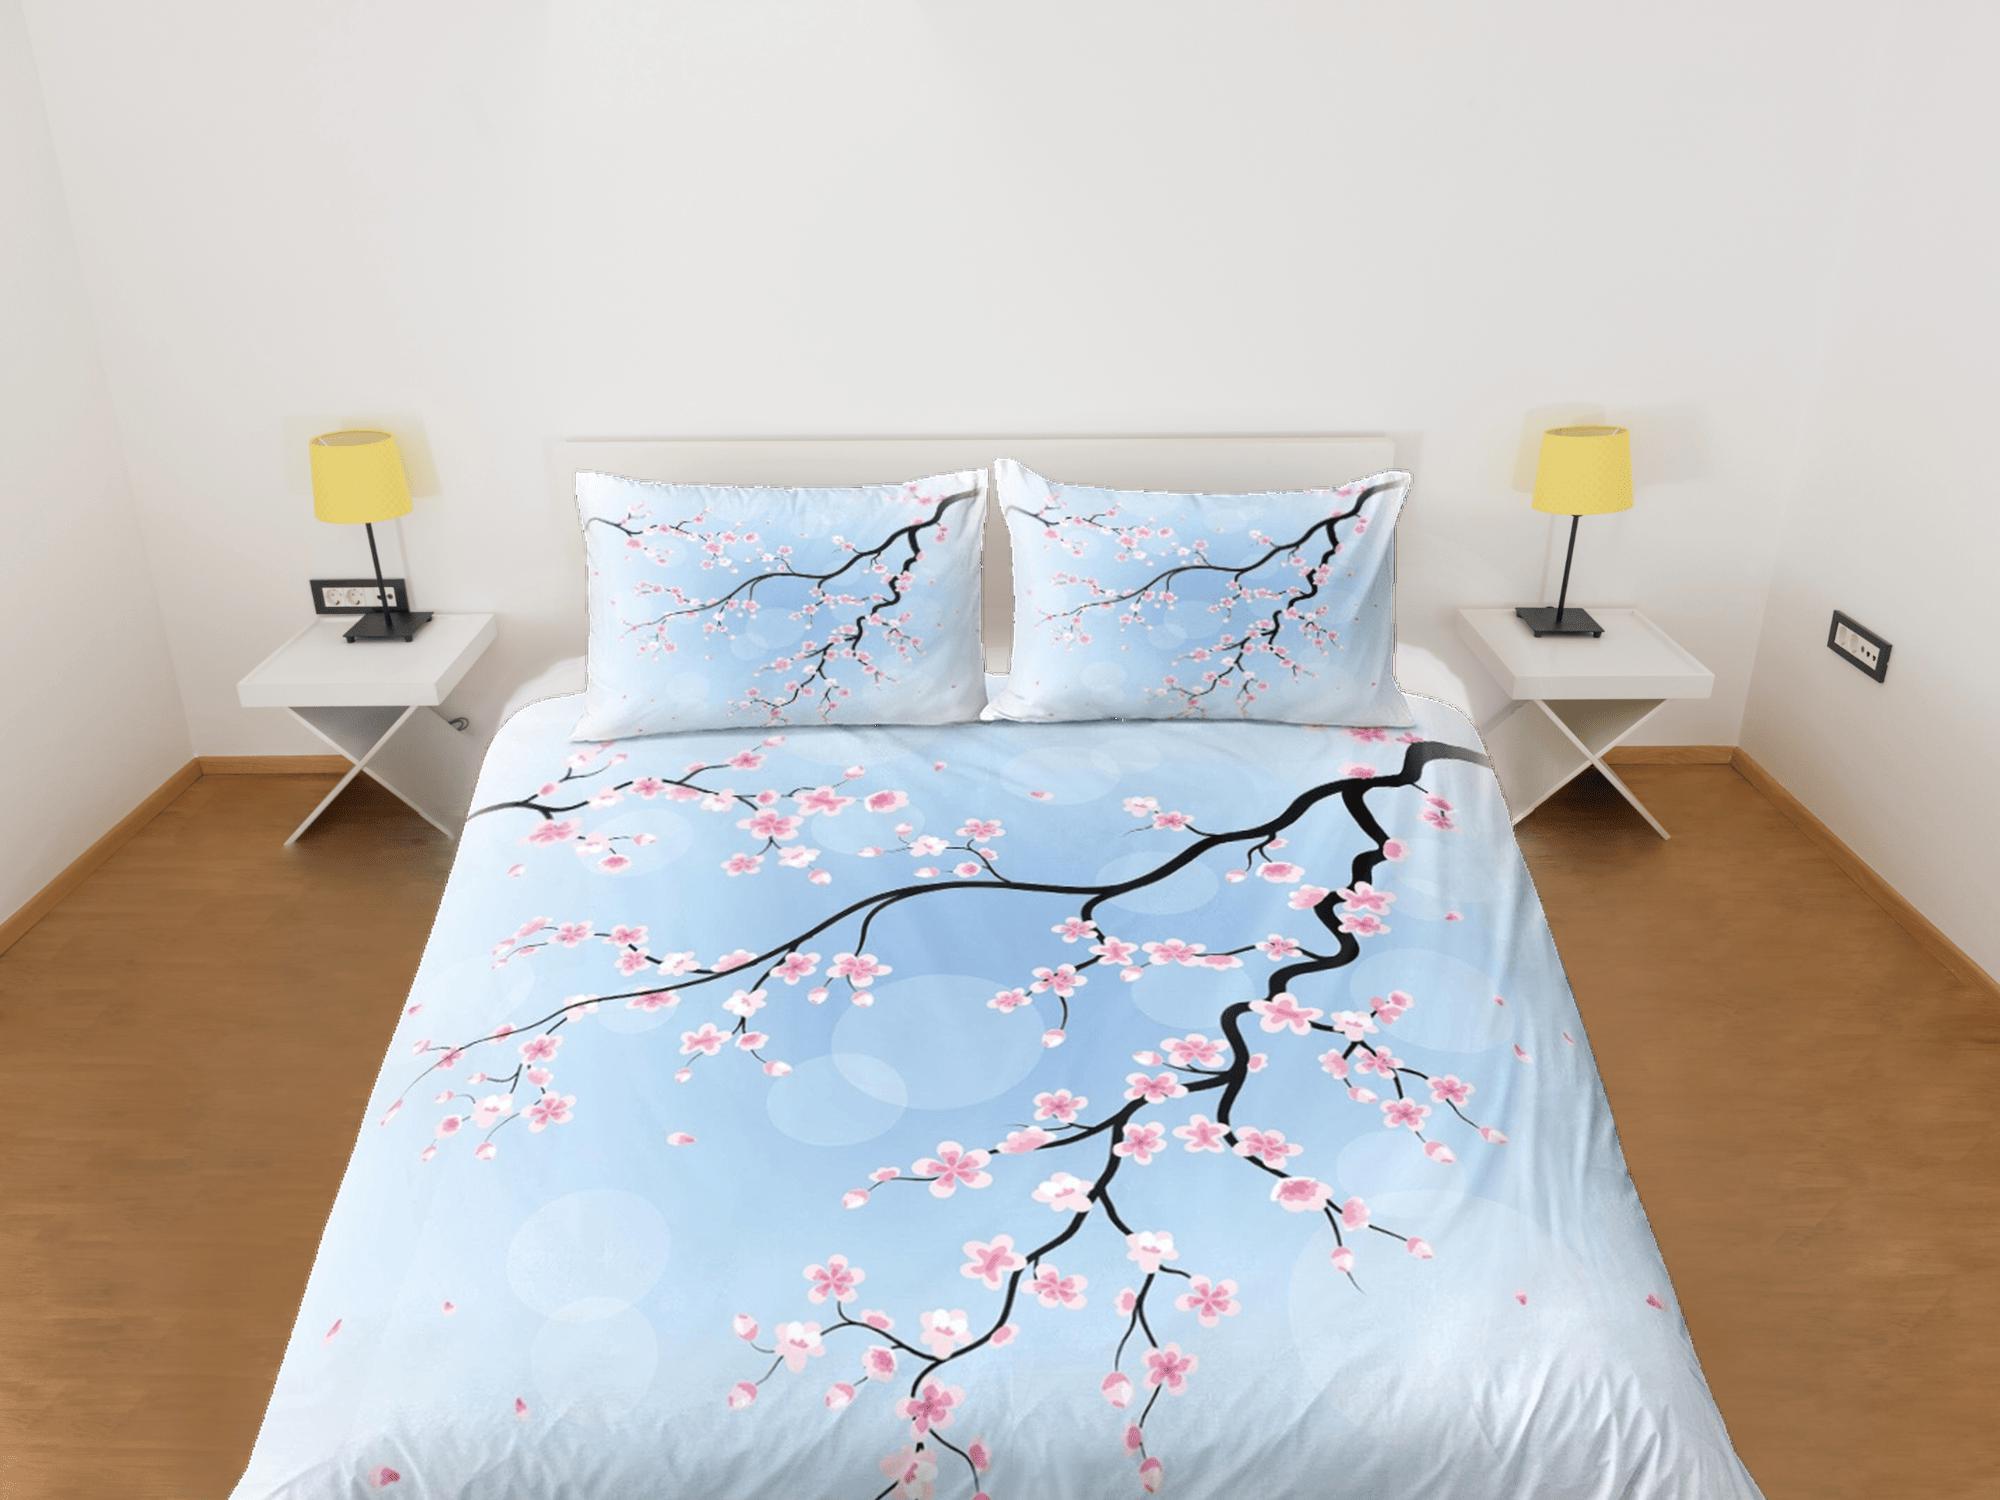 daintyduvet Cherry blossom light blue bedding floral prints duvet cover queen, king, boho bedding designer bedspread full size bedding aesthetic